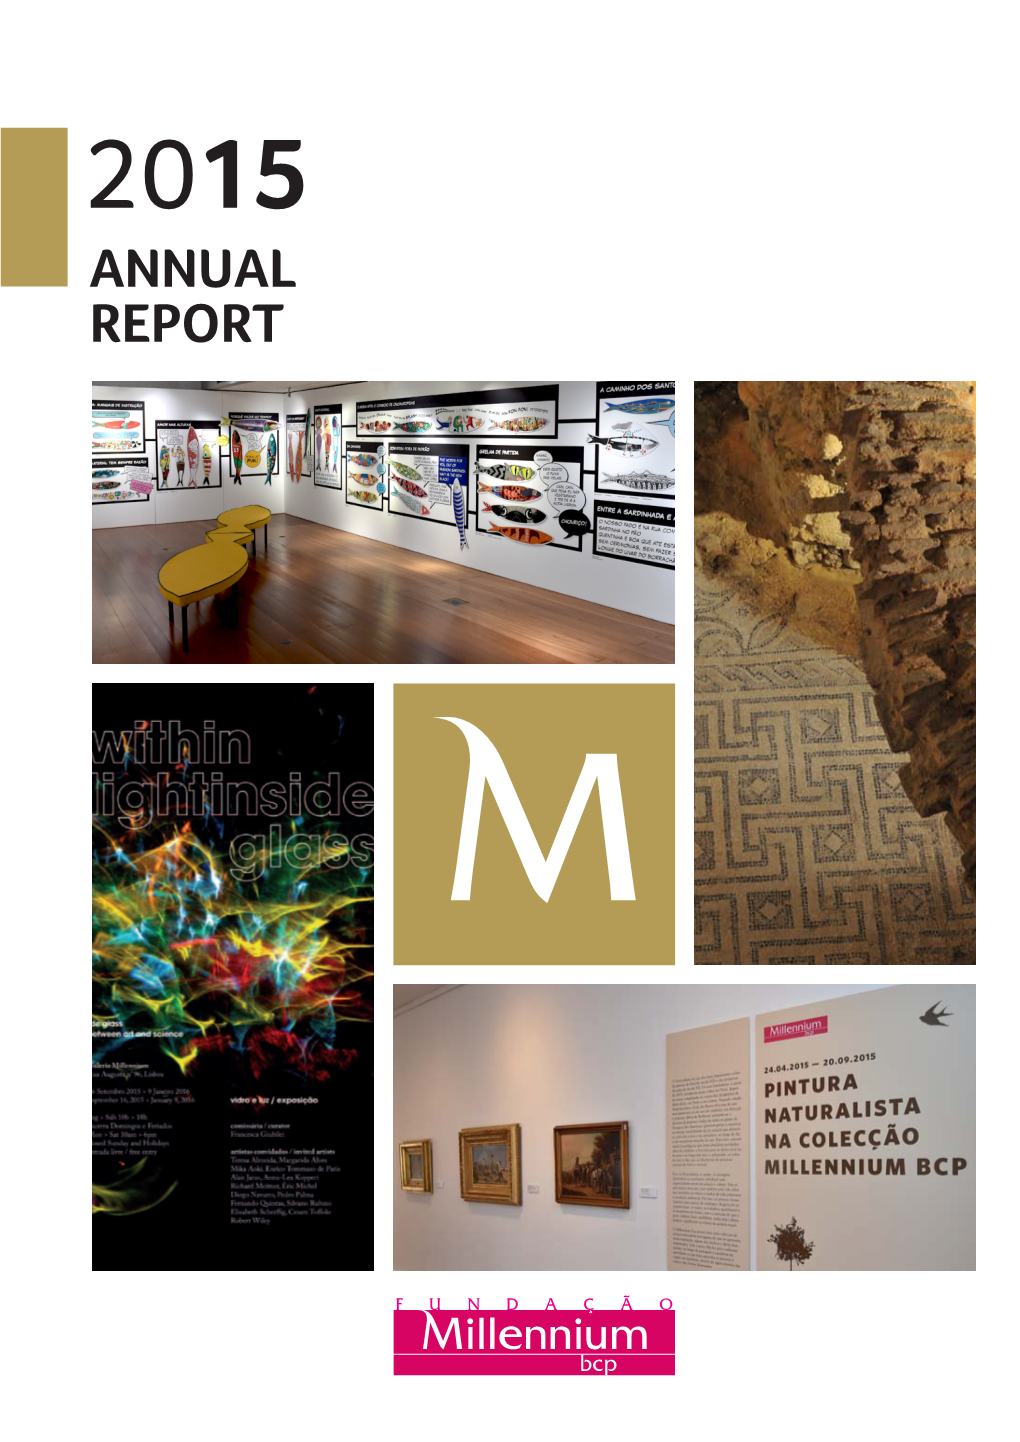 Annual Report Annual Report Fundação Millennium Bcp 2015